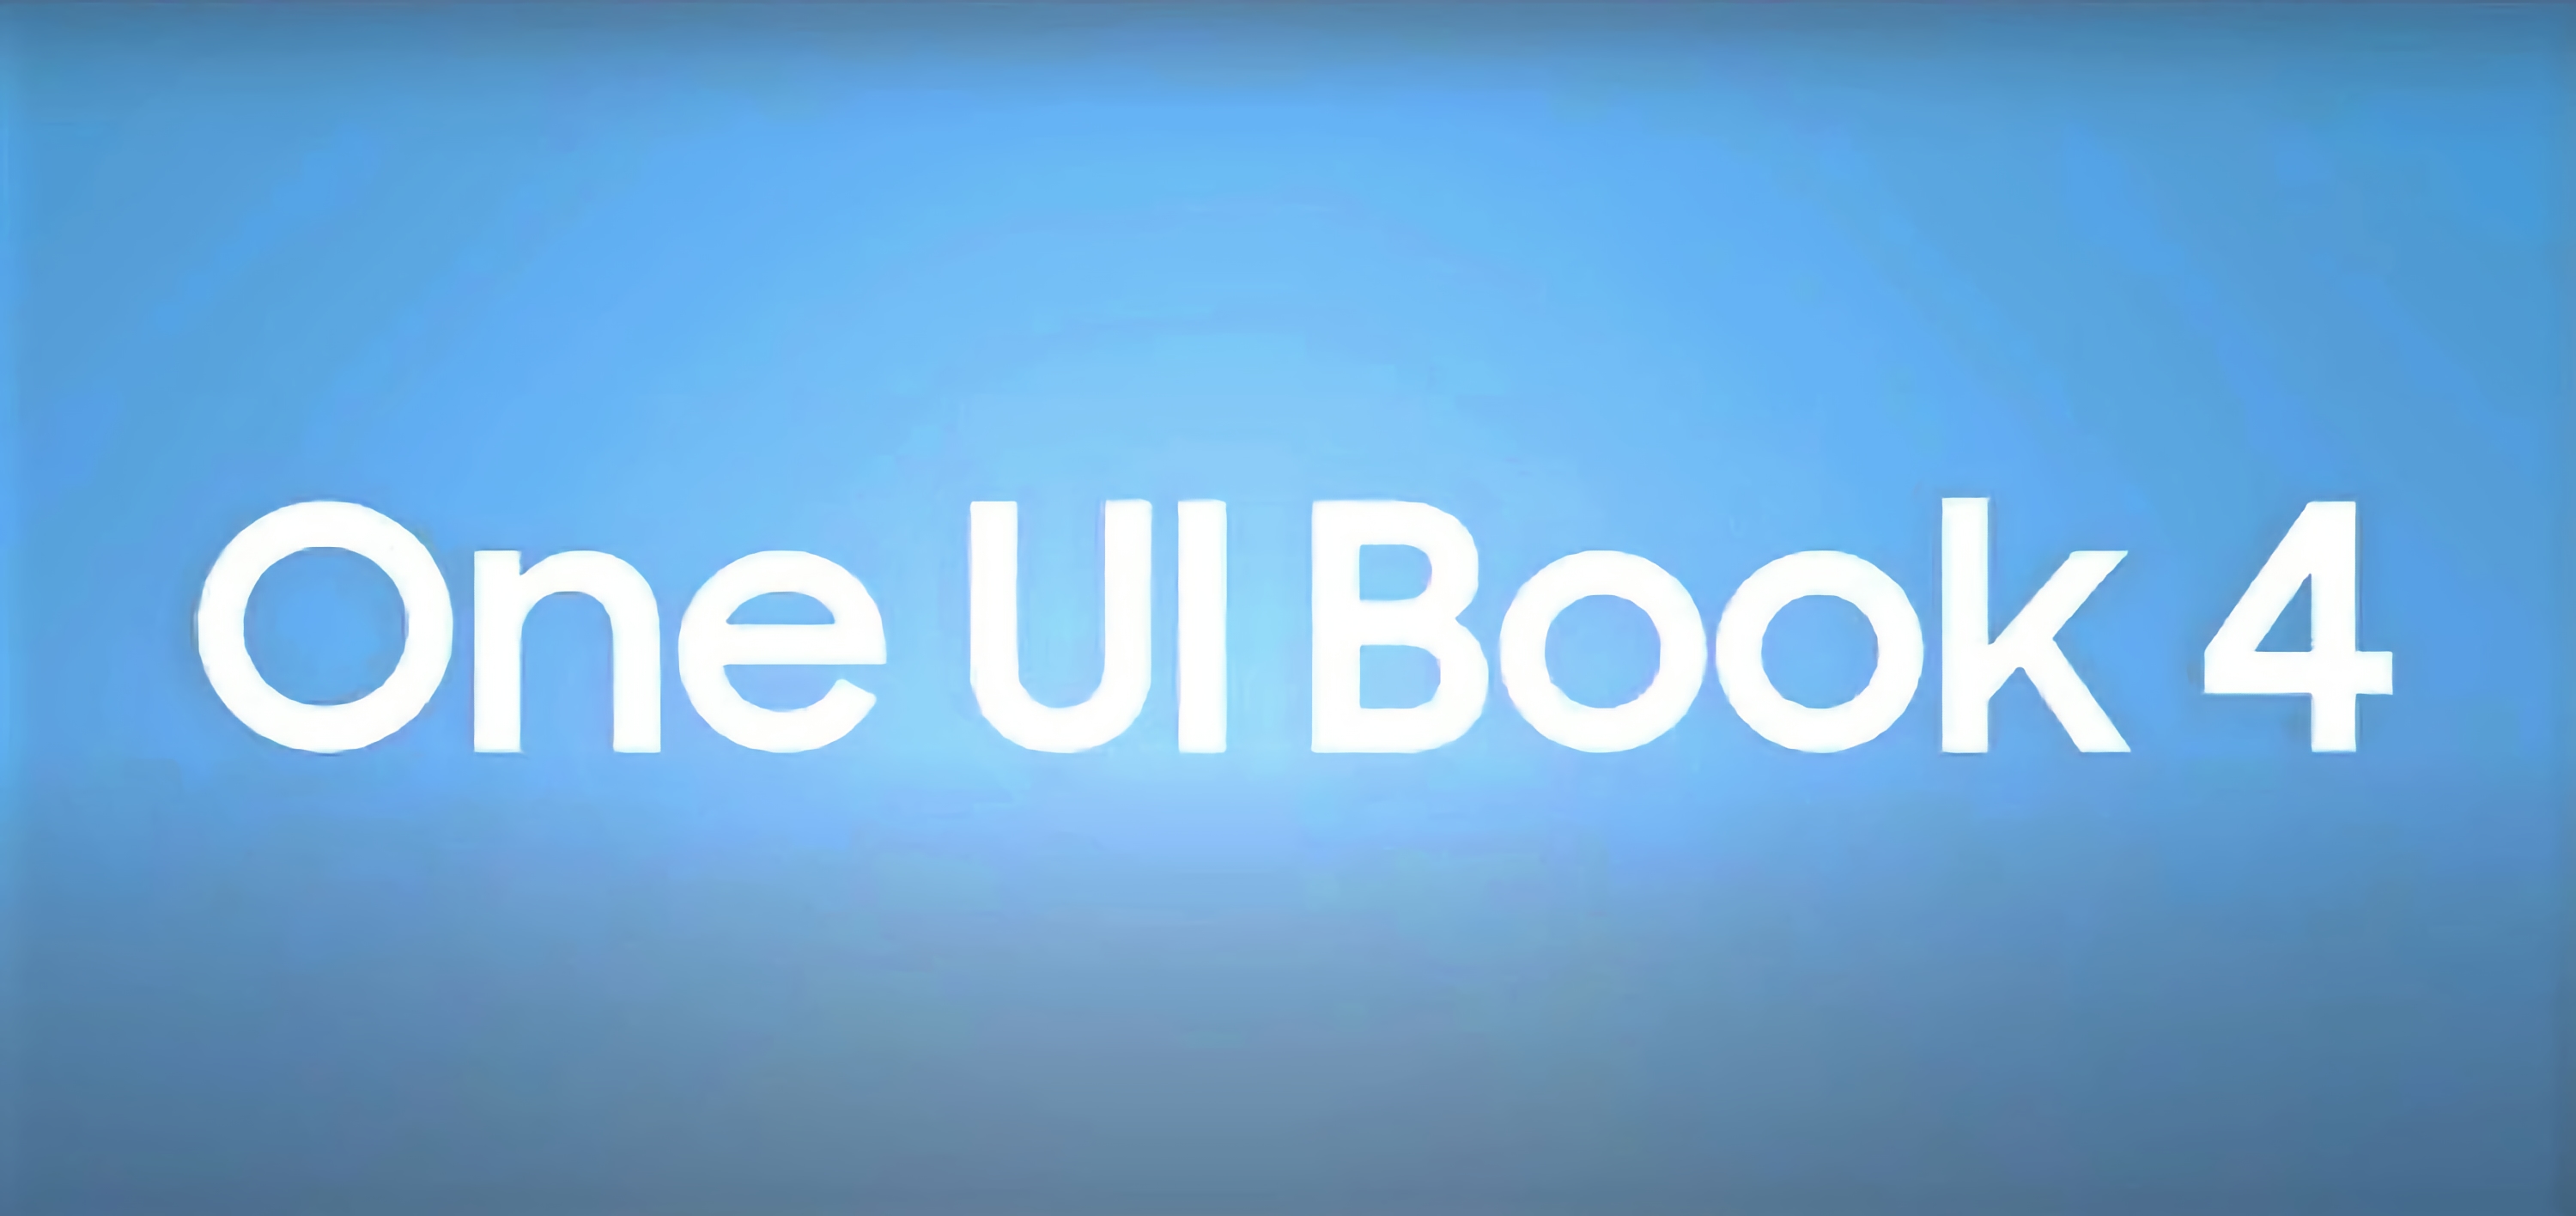 Samsung презентувала One UI Book 4: фірмову оболонку для ноутбуків з операційною системою Windows